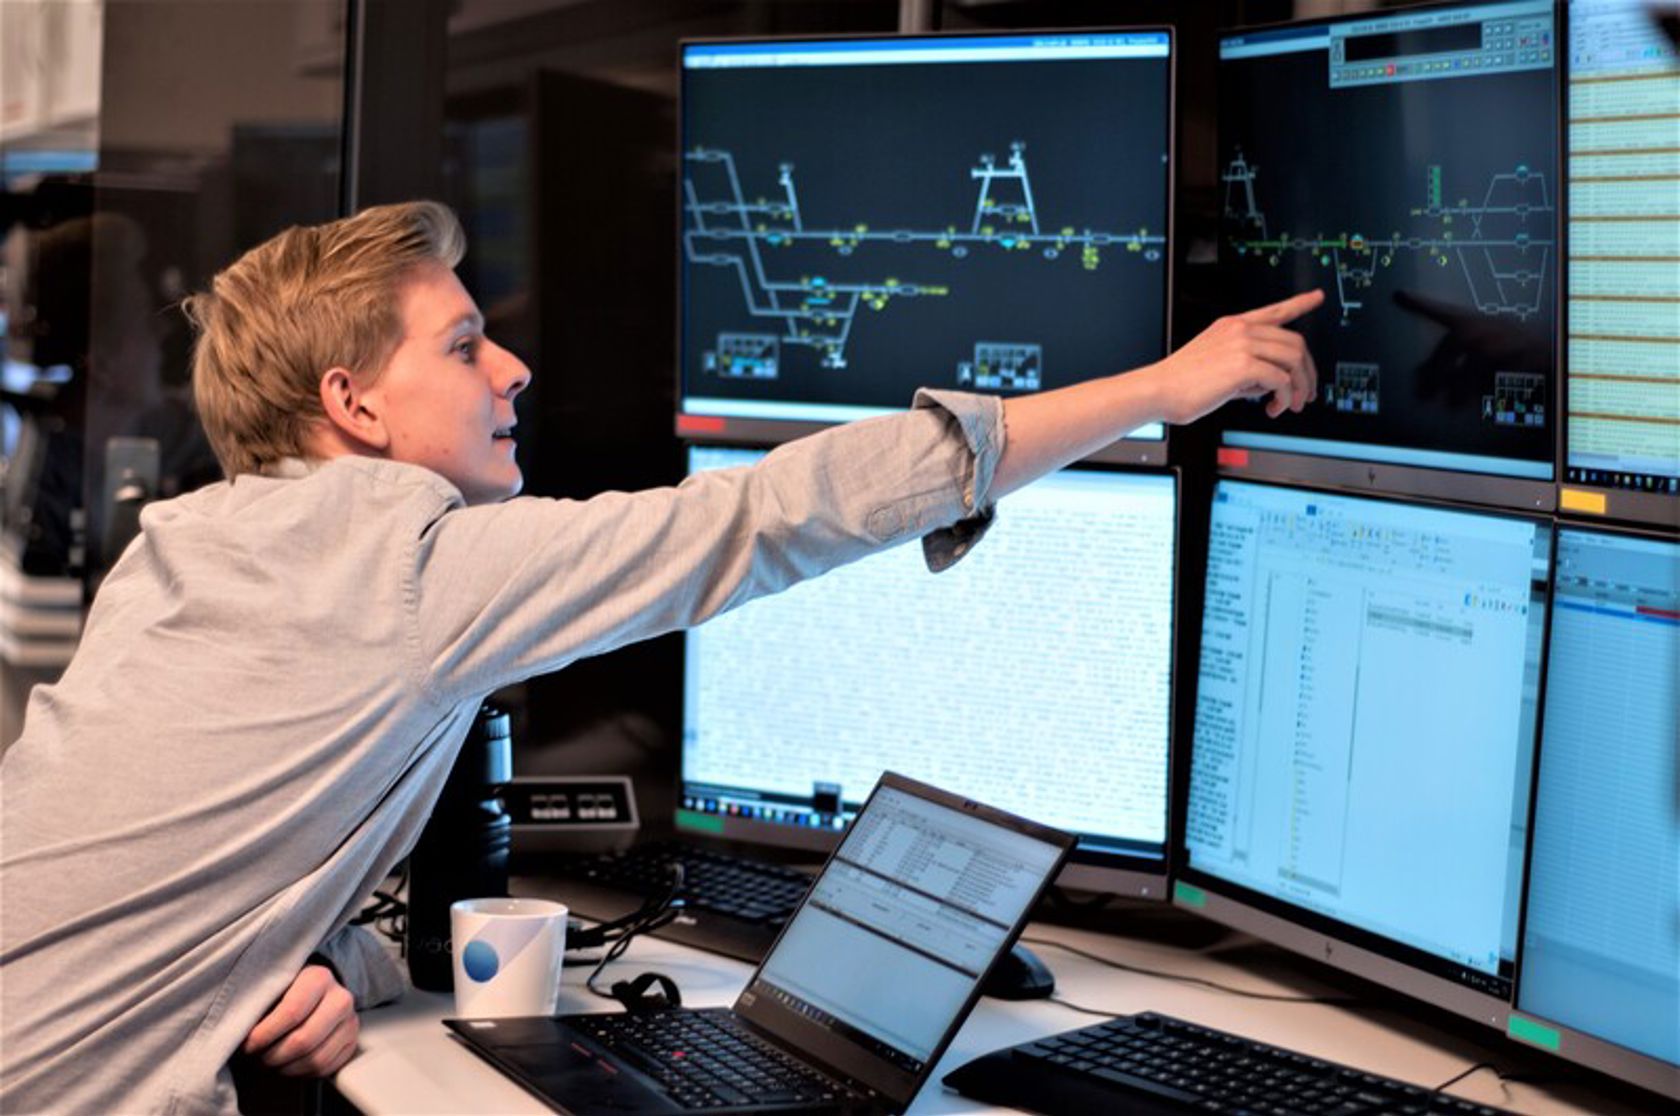 Mann som peker på skjermer over digitalt signalsystem.